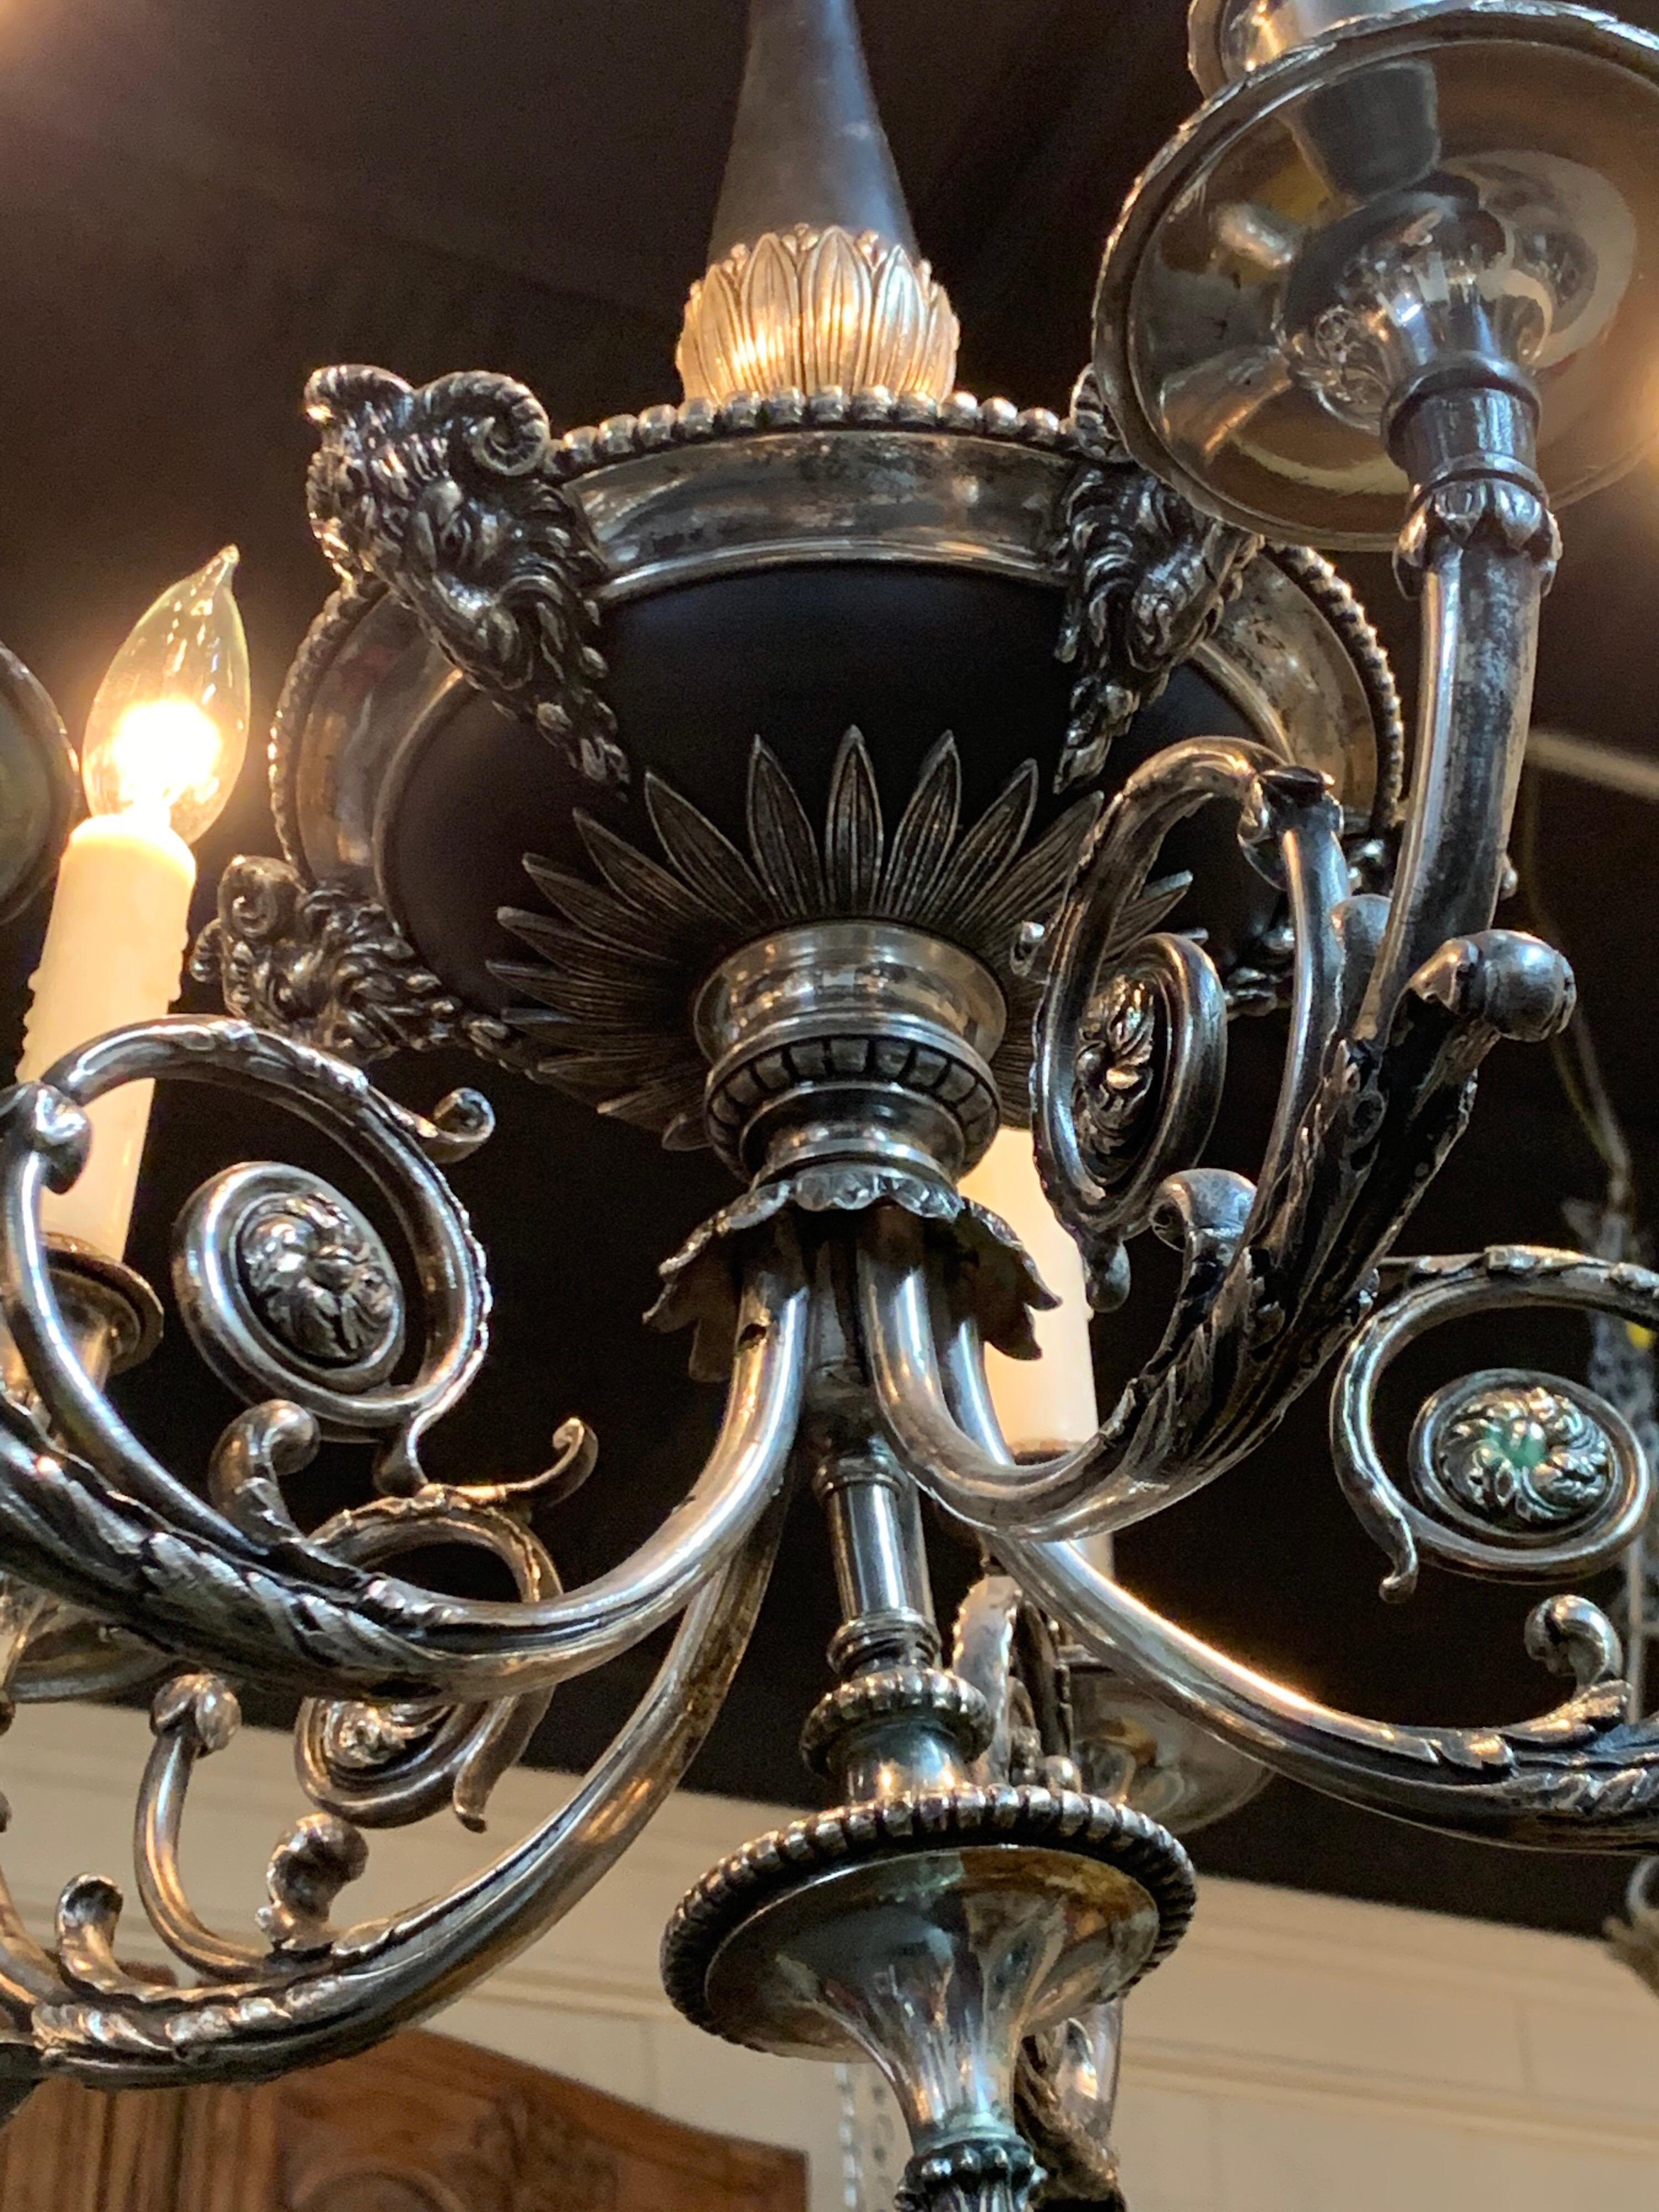 Elégant lustre à tole de style néoclassique du 19ème siècle, argenté sur bronze. Beaux détails décoratifs, notamment des têtes de béliers sur la base. Très unique !